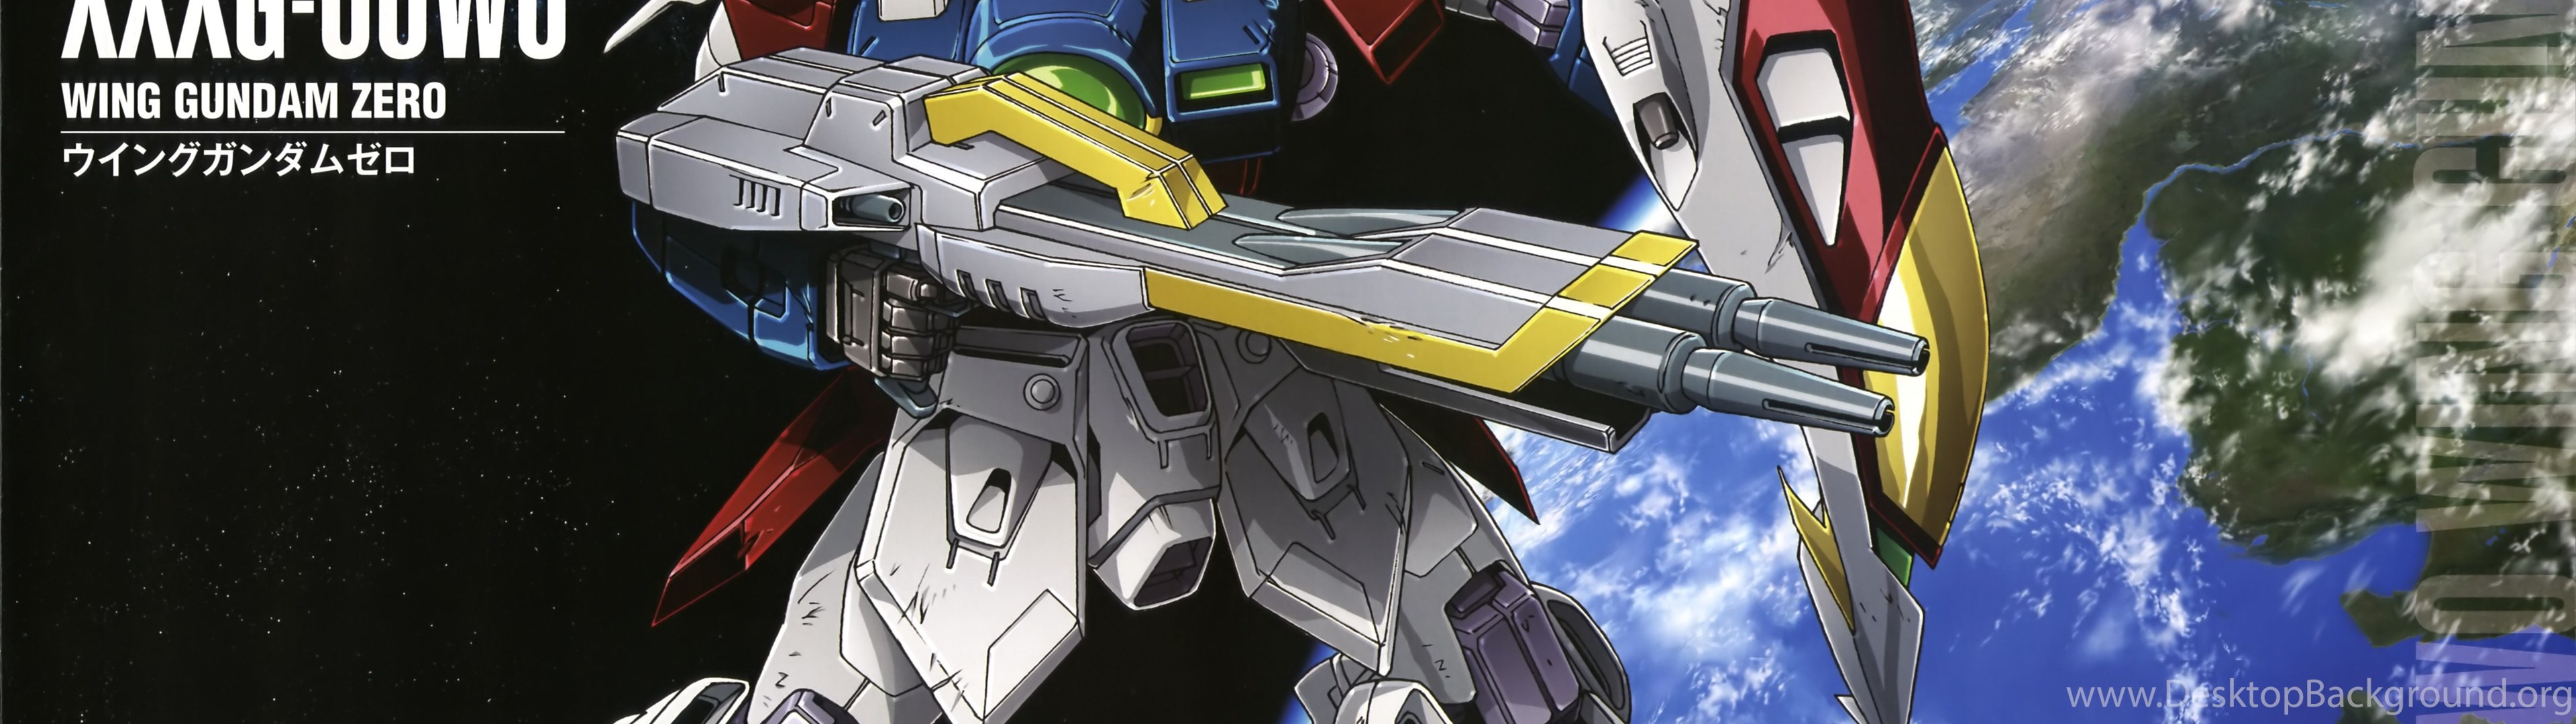 Xxxg 00w0 Wing Gundam Zero The Gundam Wiki Wikia Desktop Background